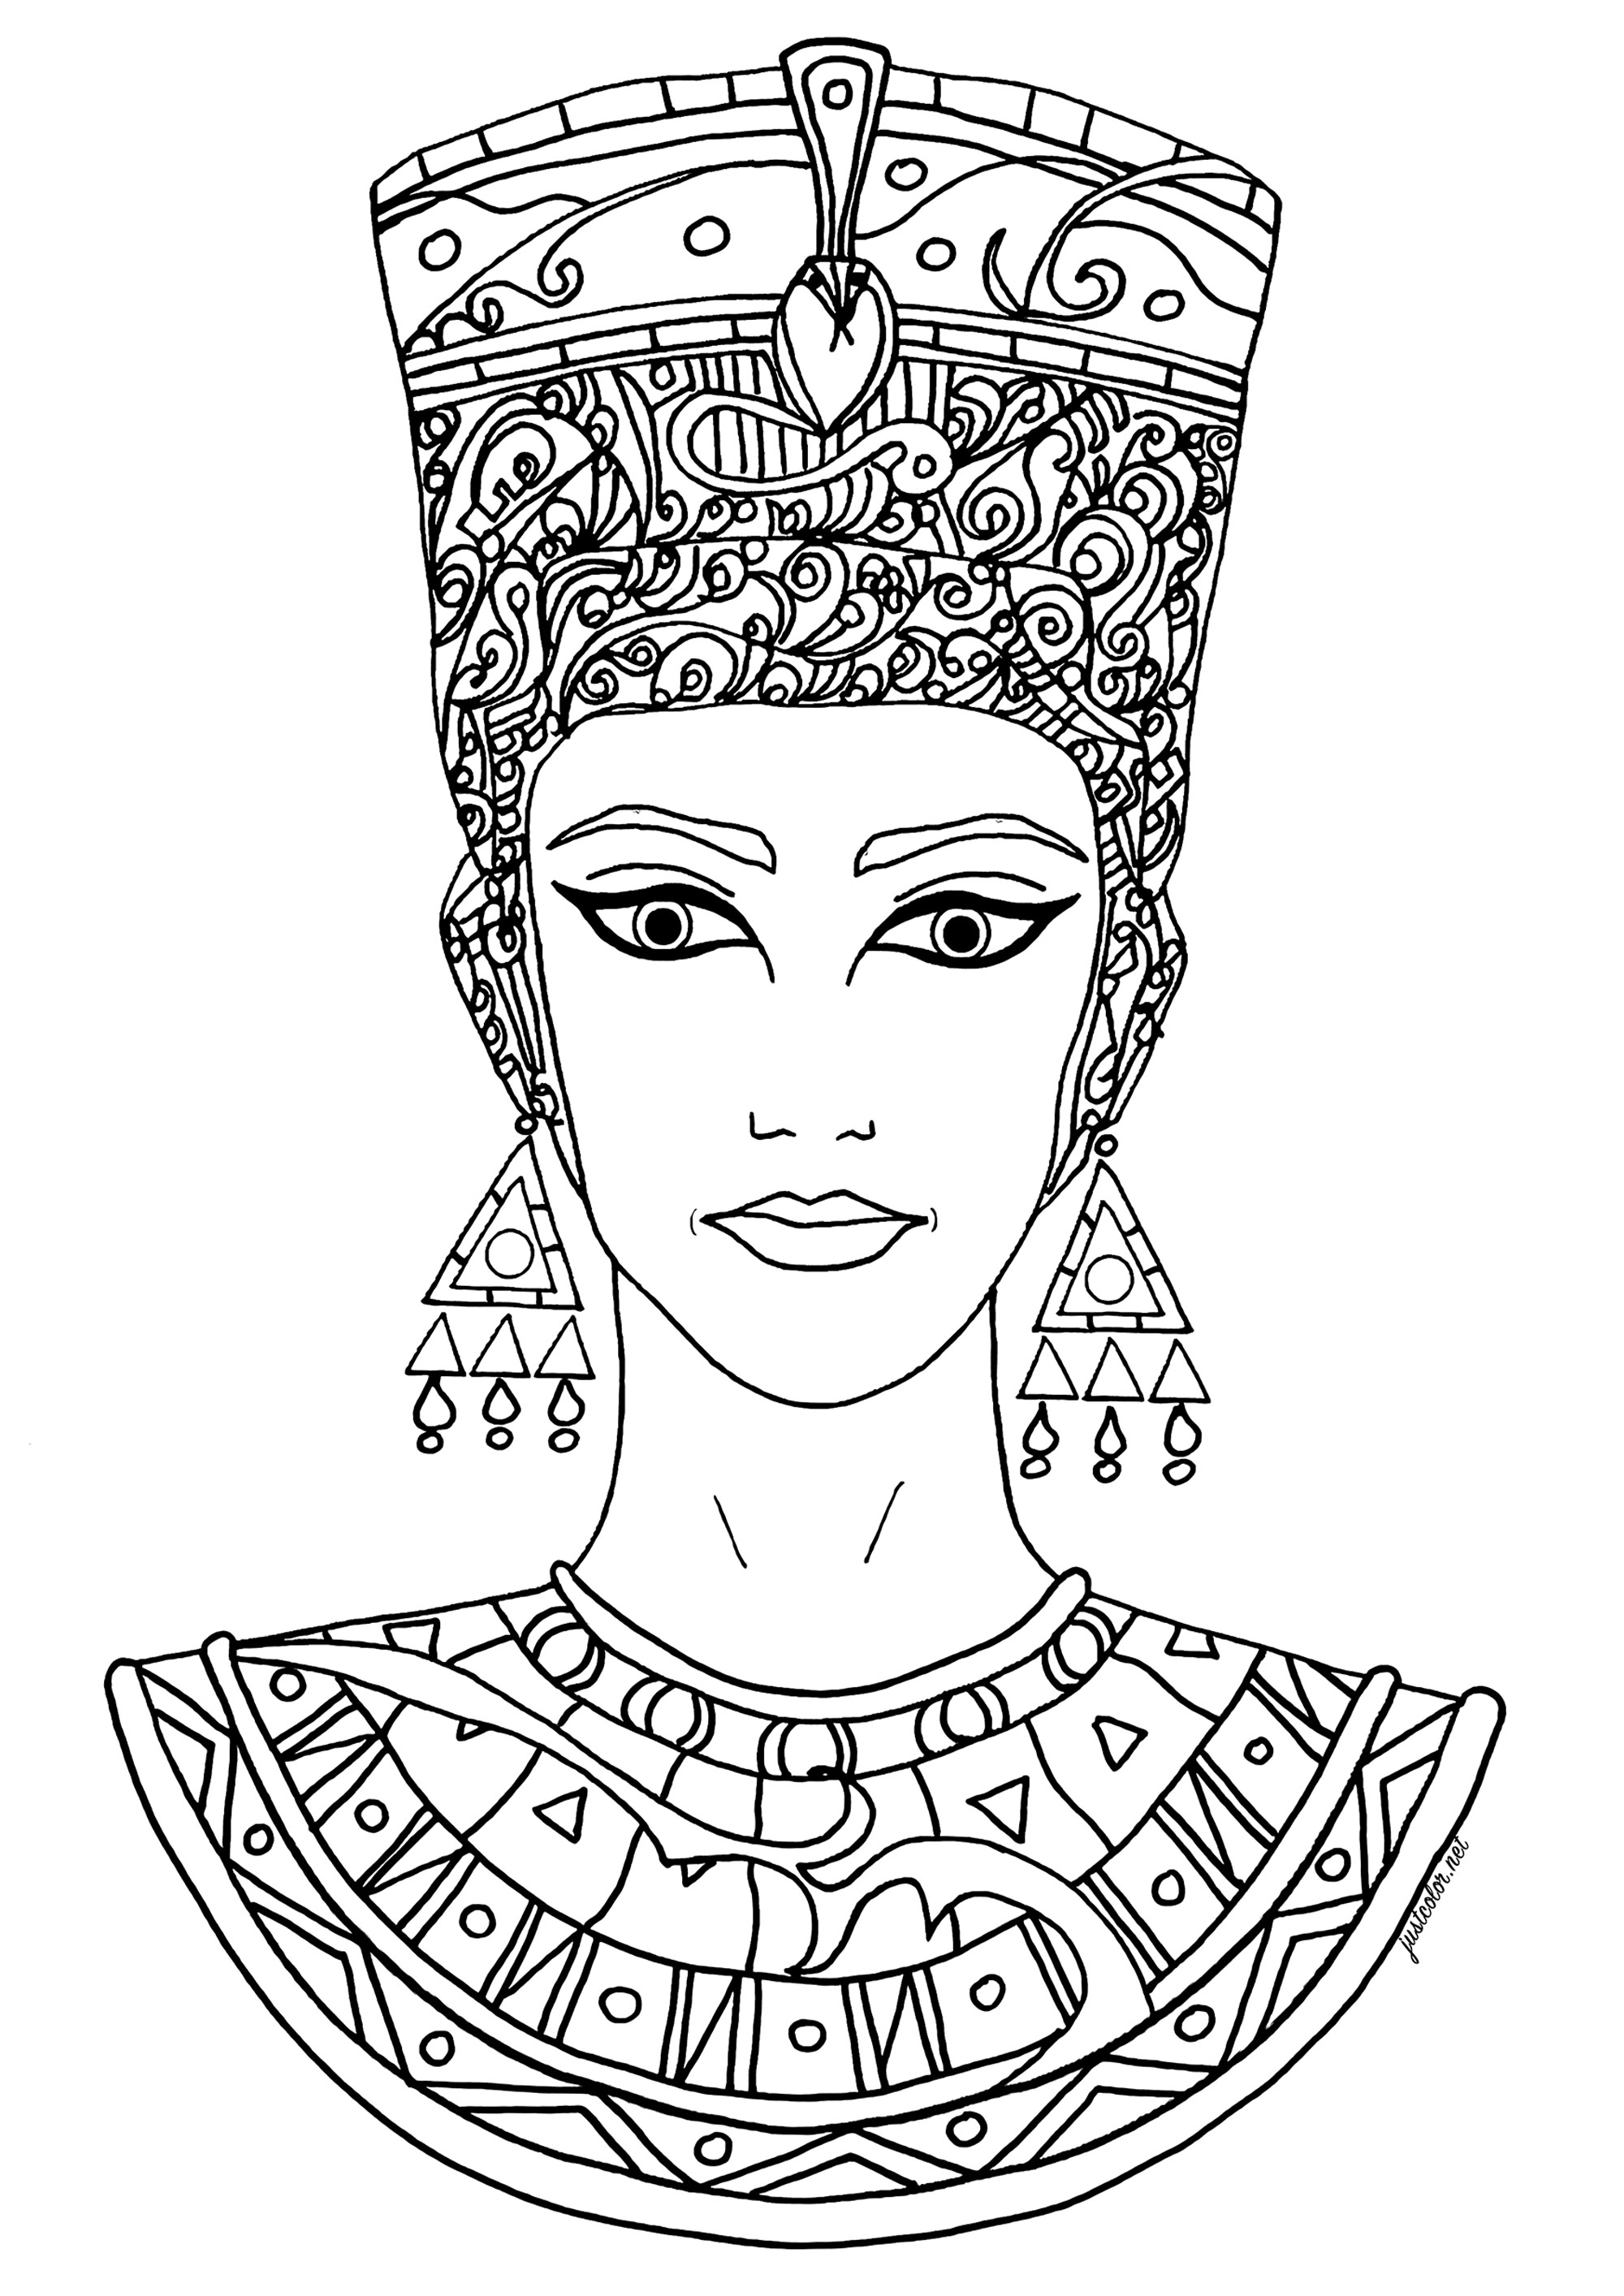 Schöne Zeichnung, frei inspiriert von Nofretete. Nofretete war eine altägyptische Königin, Ehefrau des Pharaos Echnaton, der etwa 1353-1336 v. Chr. regierte. Sie ist vor allem für ihre Rolle bei Echnatons religiöser Revolution bekannt, in deren Verlauf der Kult des Sonnengottes Aten zur vorherrschenden Religion Ägyptens wurde, sowie für ihre berühmte Büste, die als eines der wichtigsten Werke der ägyptischen Kunst gilt.